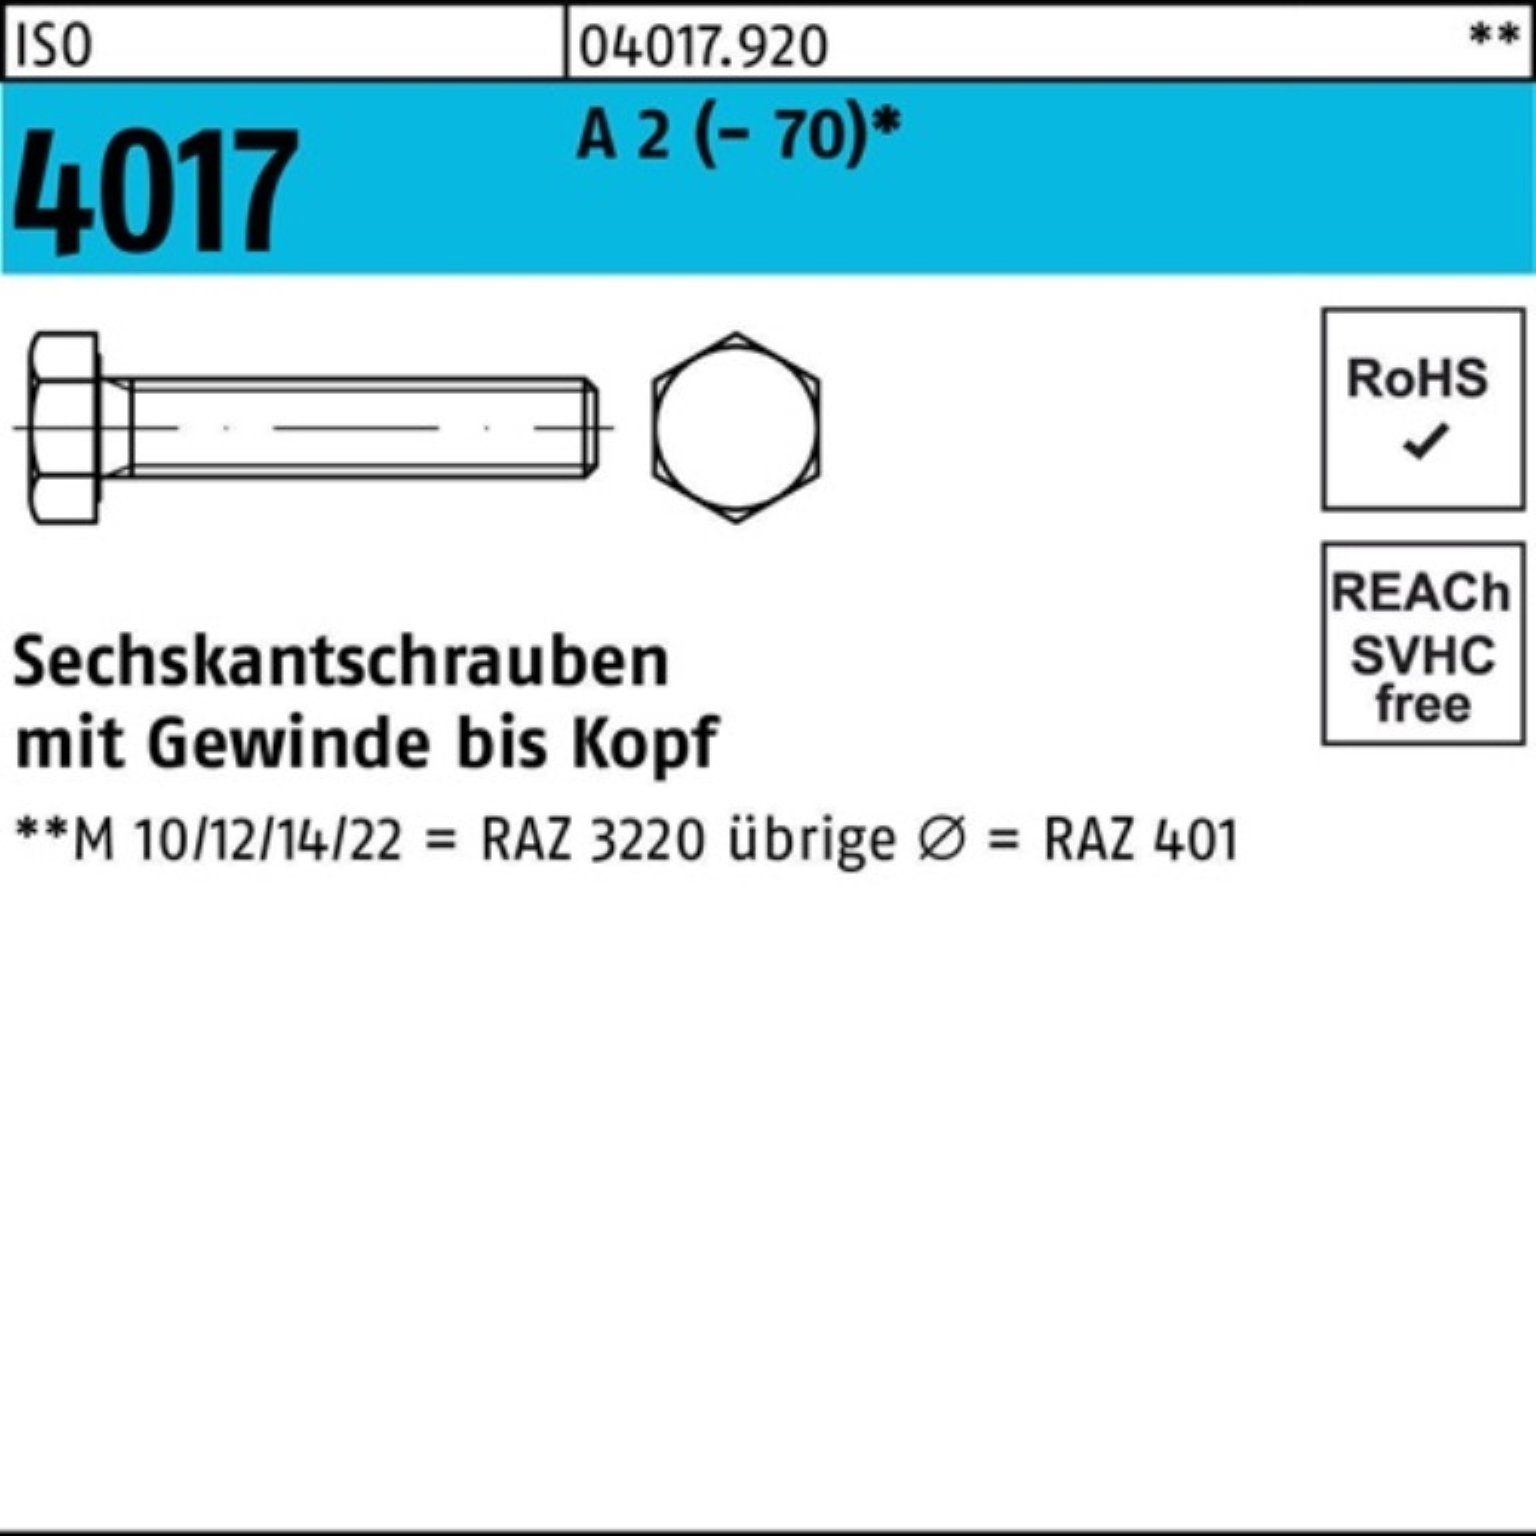 Pack 100er Bufab 150 VG 1 (70) ISO A Sechskantschraube 4017 2 Stück Sechskantschraube M18x